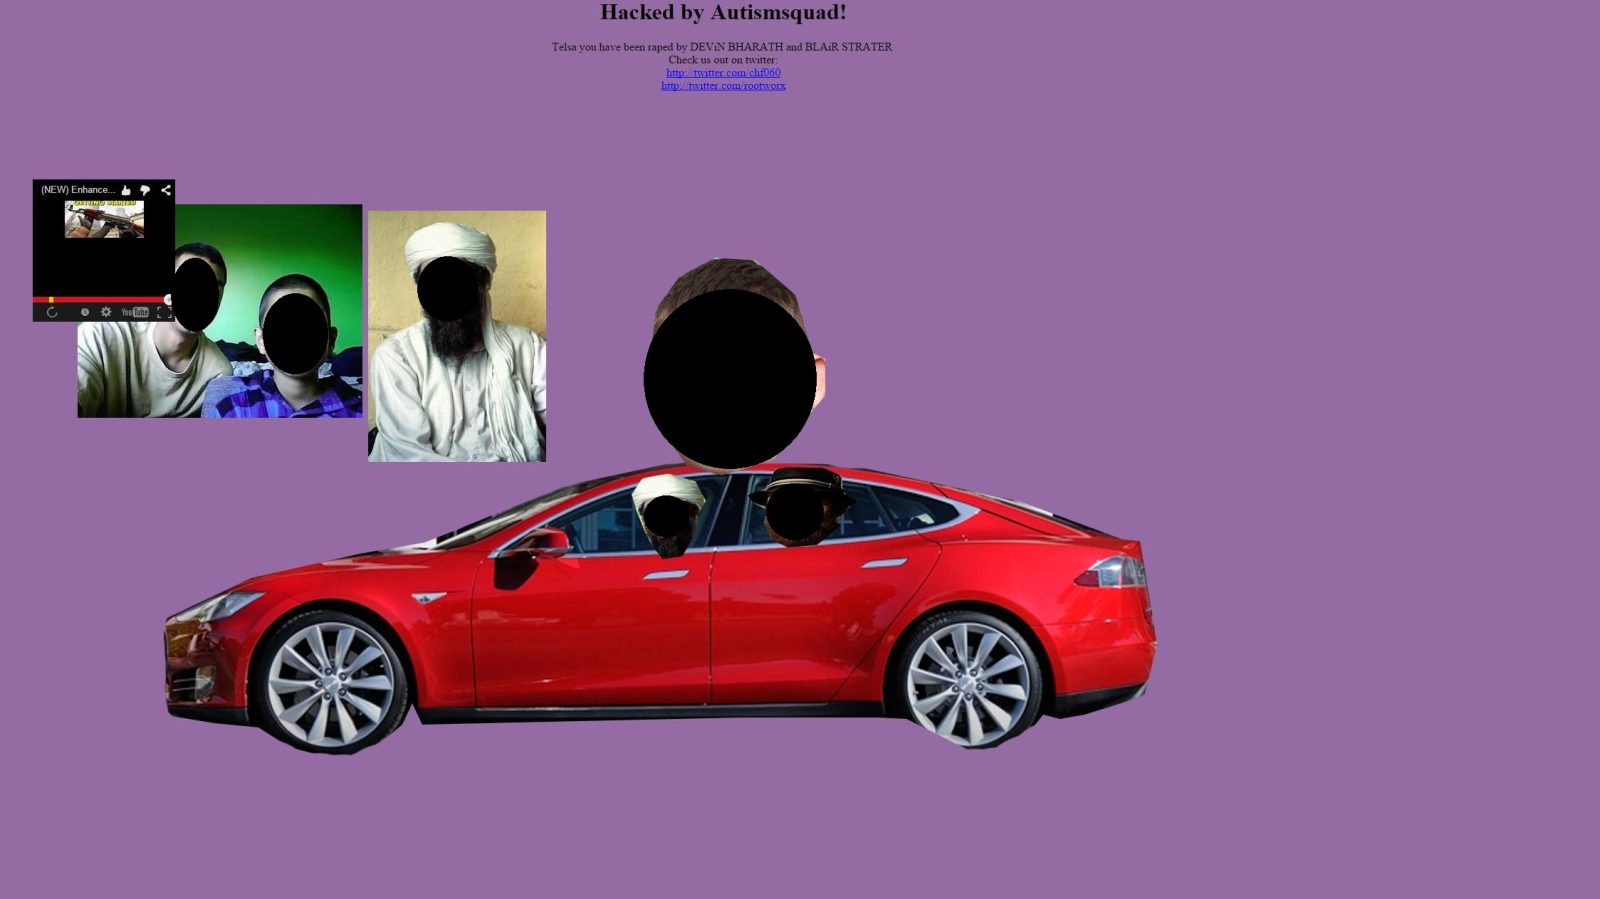 Tesla Motors' website and Twitter account were hacked